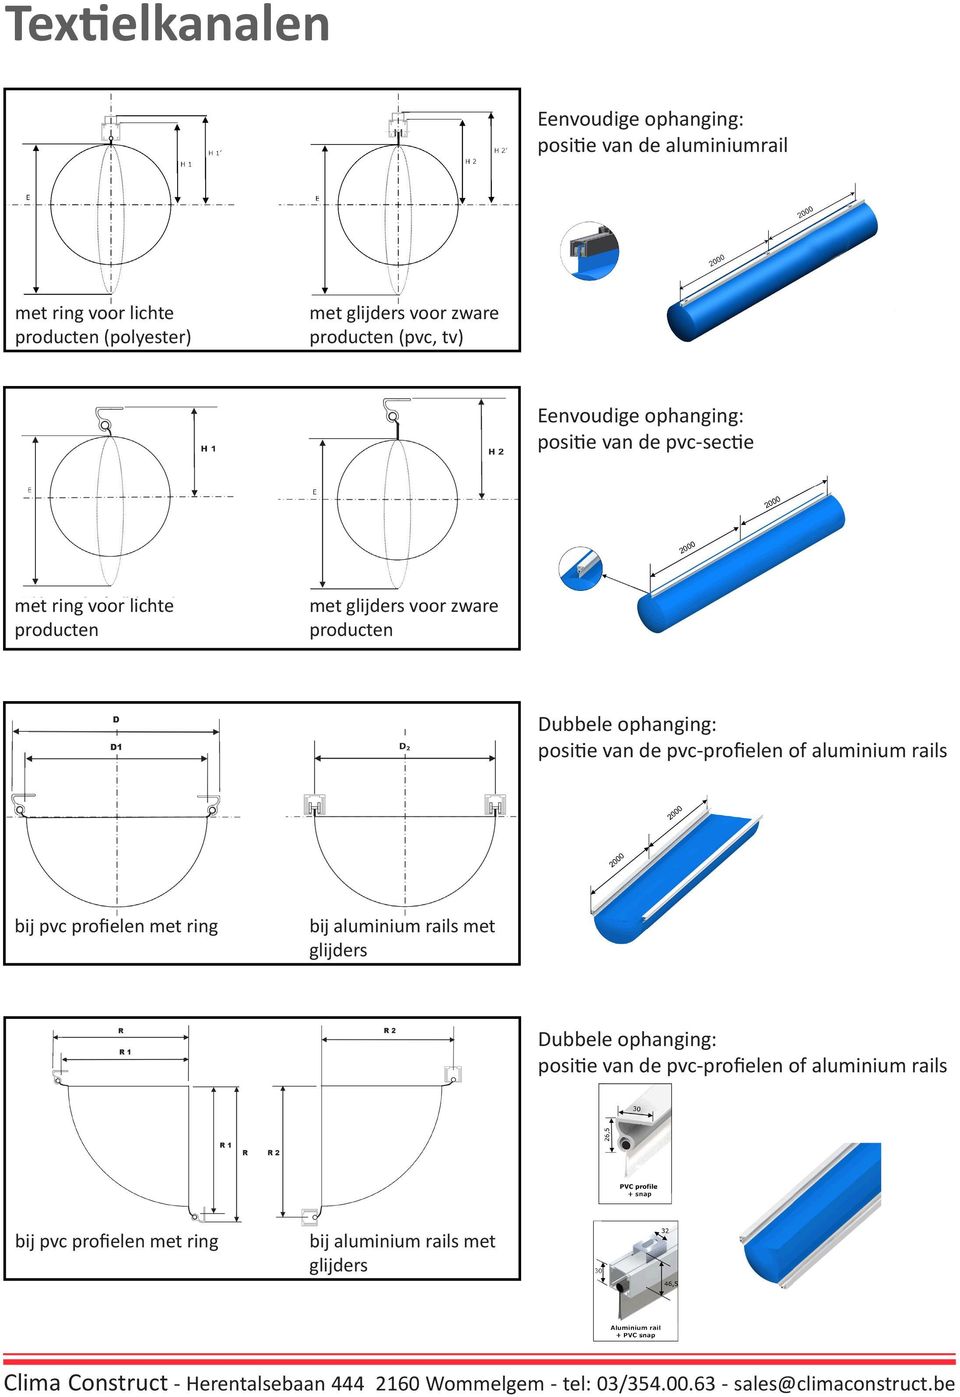 producten Dubbele ophanging: positie van de pvc-profielen of aluminium rails bij pvc profielen met ring bij aluminium rails